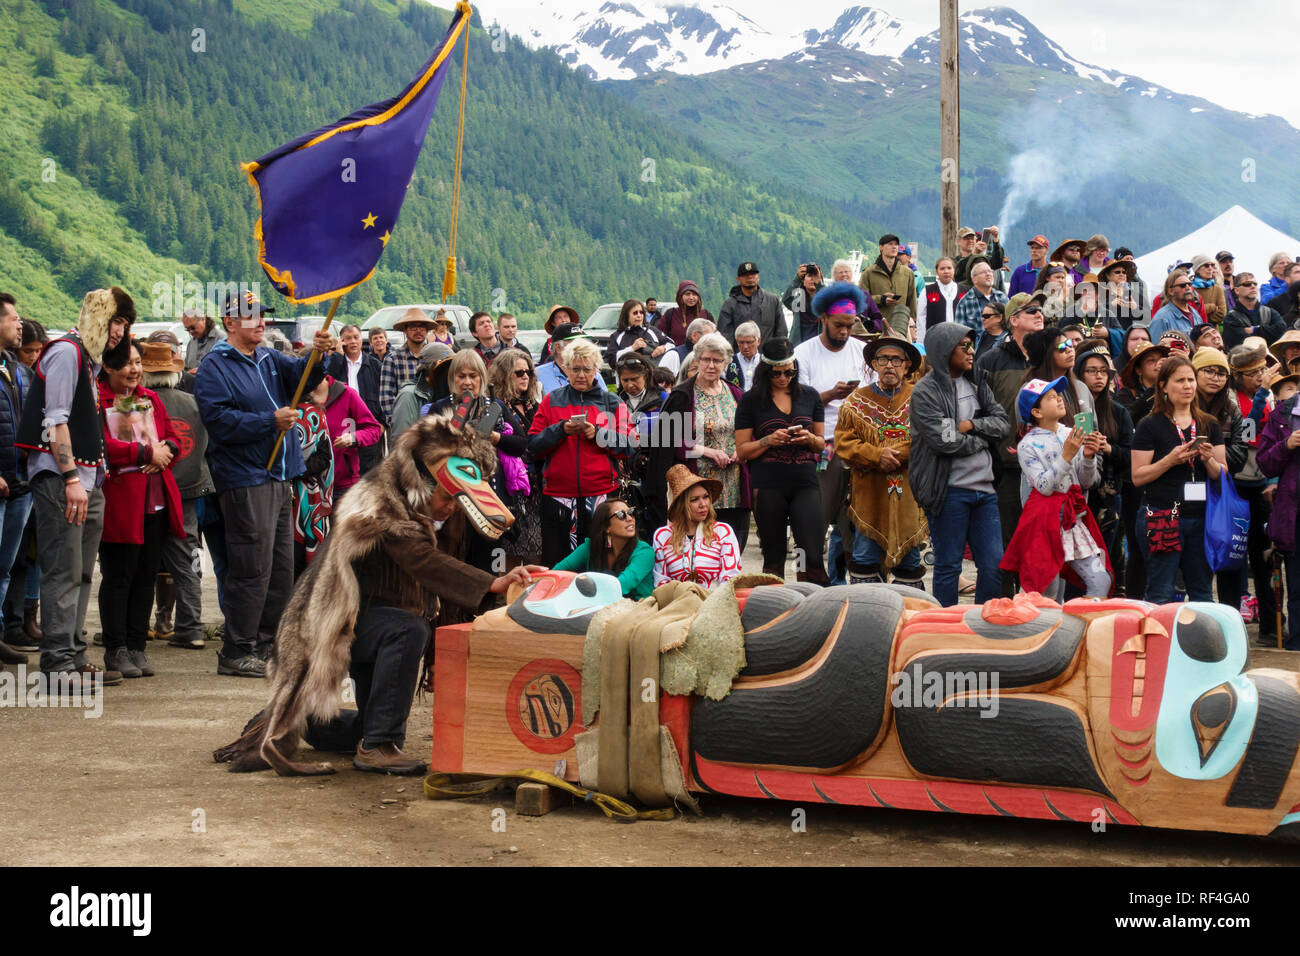 Une foule de gens de la haida et tlingit Tsimshian, tribus se sont réunis pour un Native American Indian totem sensibilisation célébration, Juneau, Alaska Banque D'Images